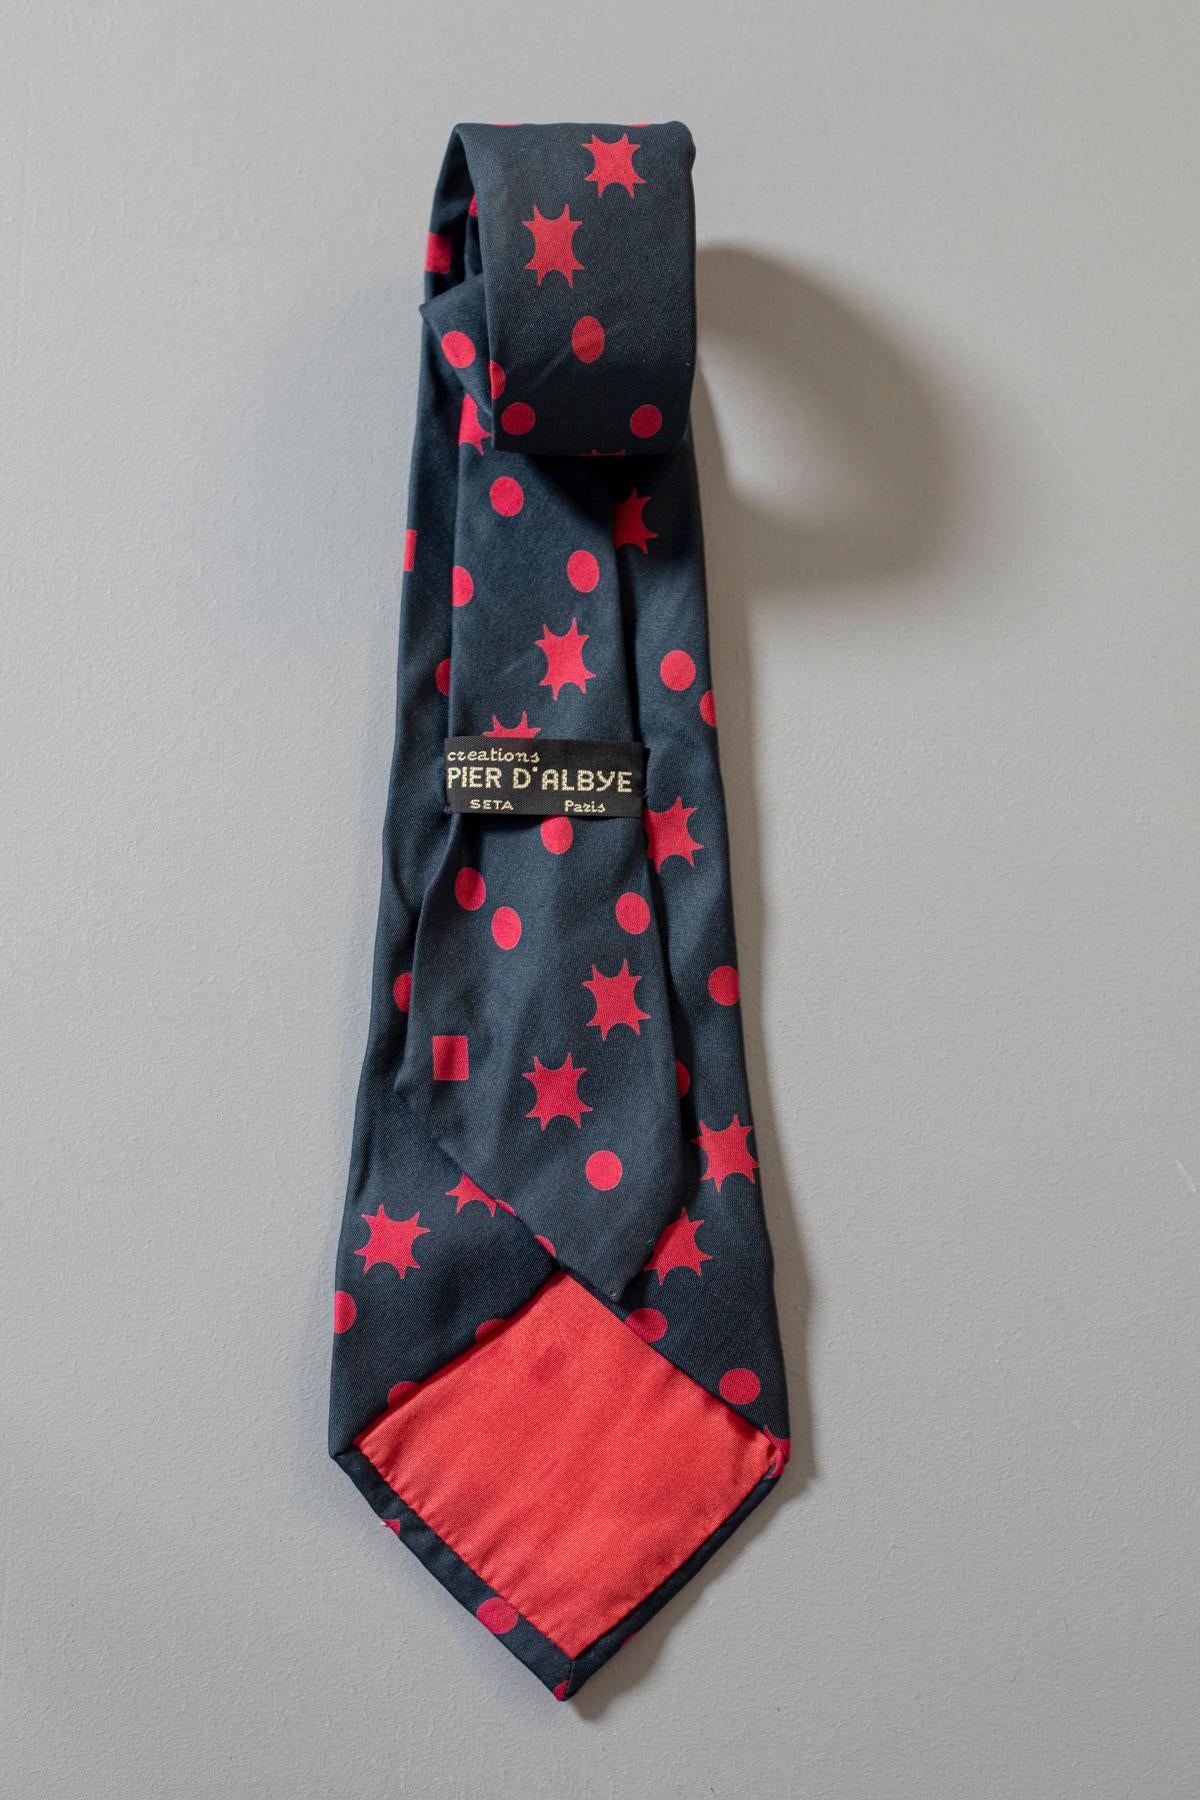 Noir Piere D'Albye - Cravate vintage en soie entièrement recouverte de rouge avec de petites formes géométriques rouges en vente